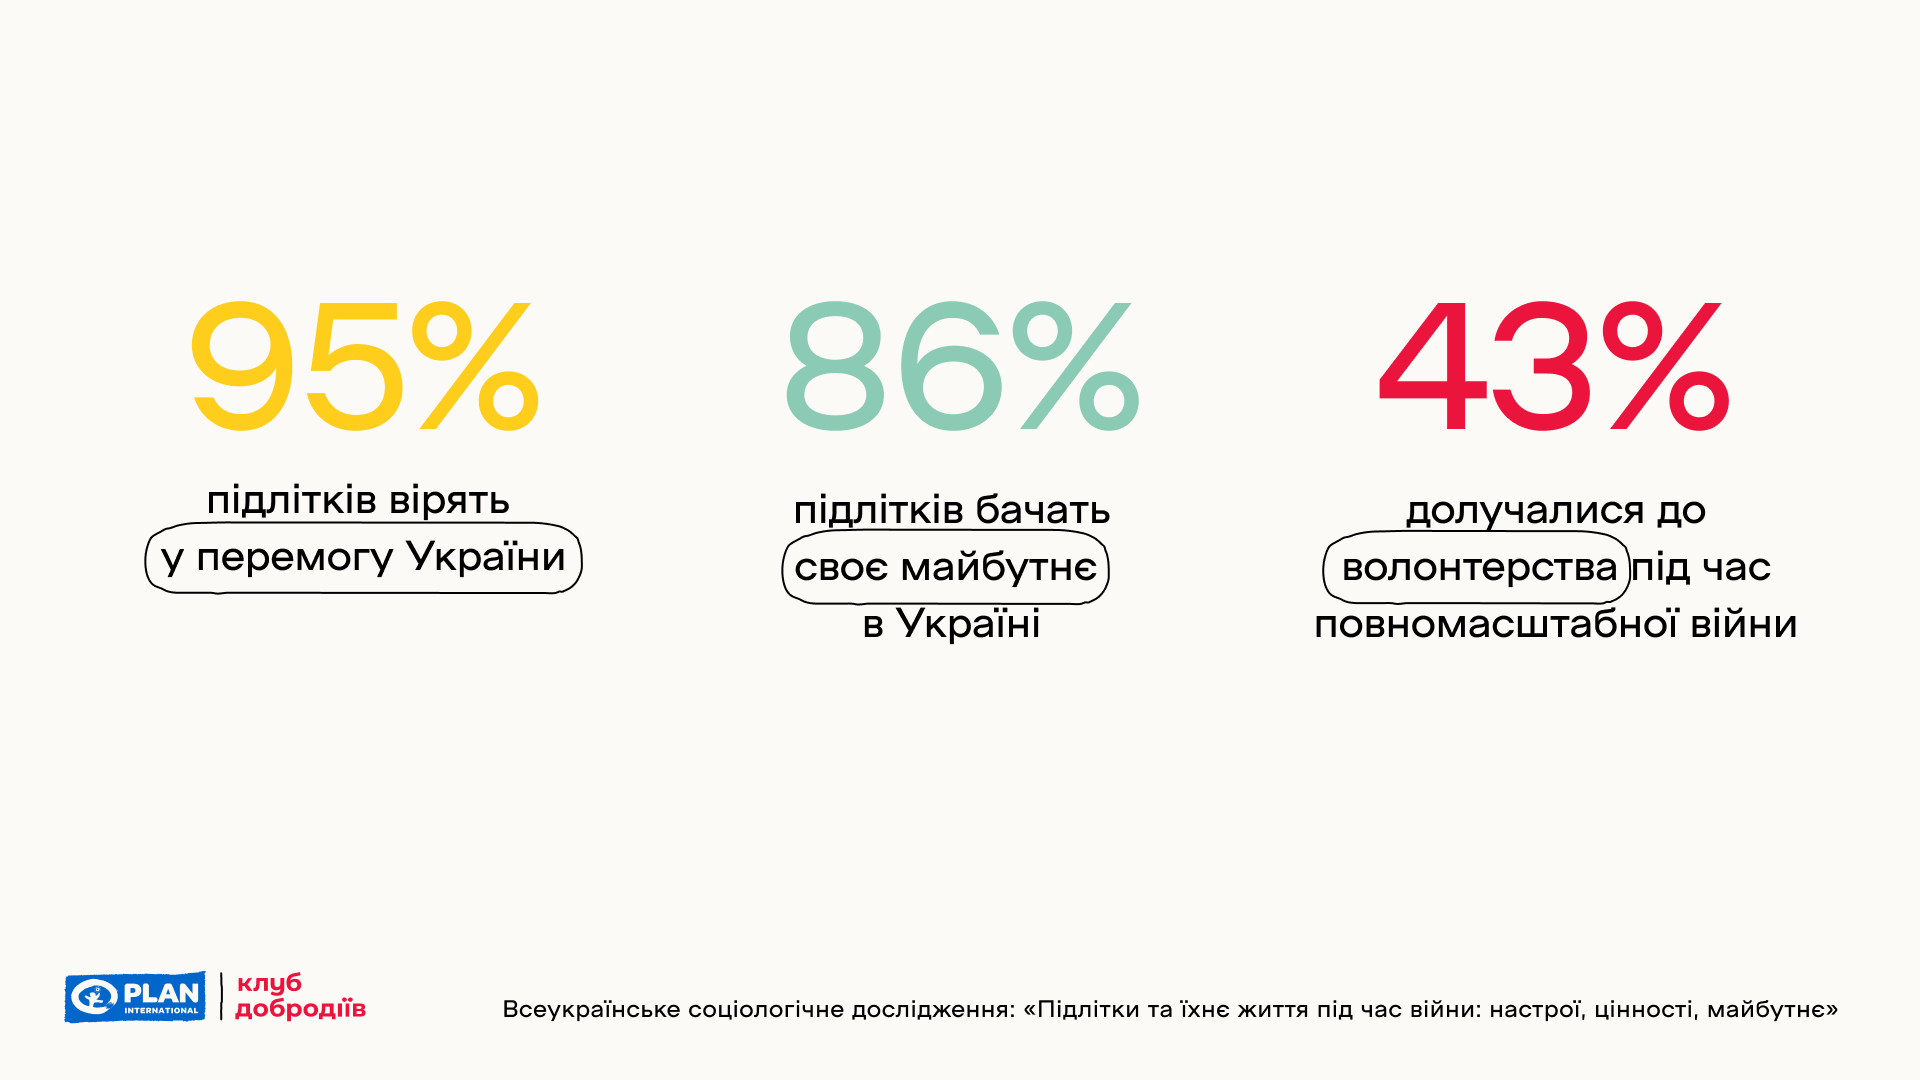 90% украинских подростков хотят быть полезными во время восстановления Украины